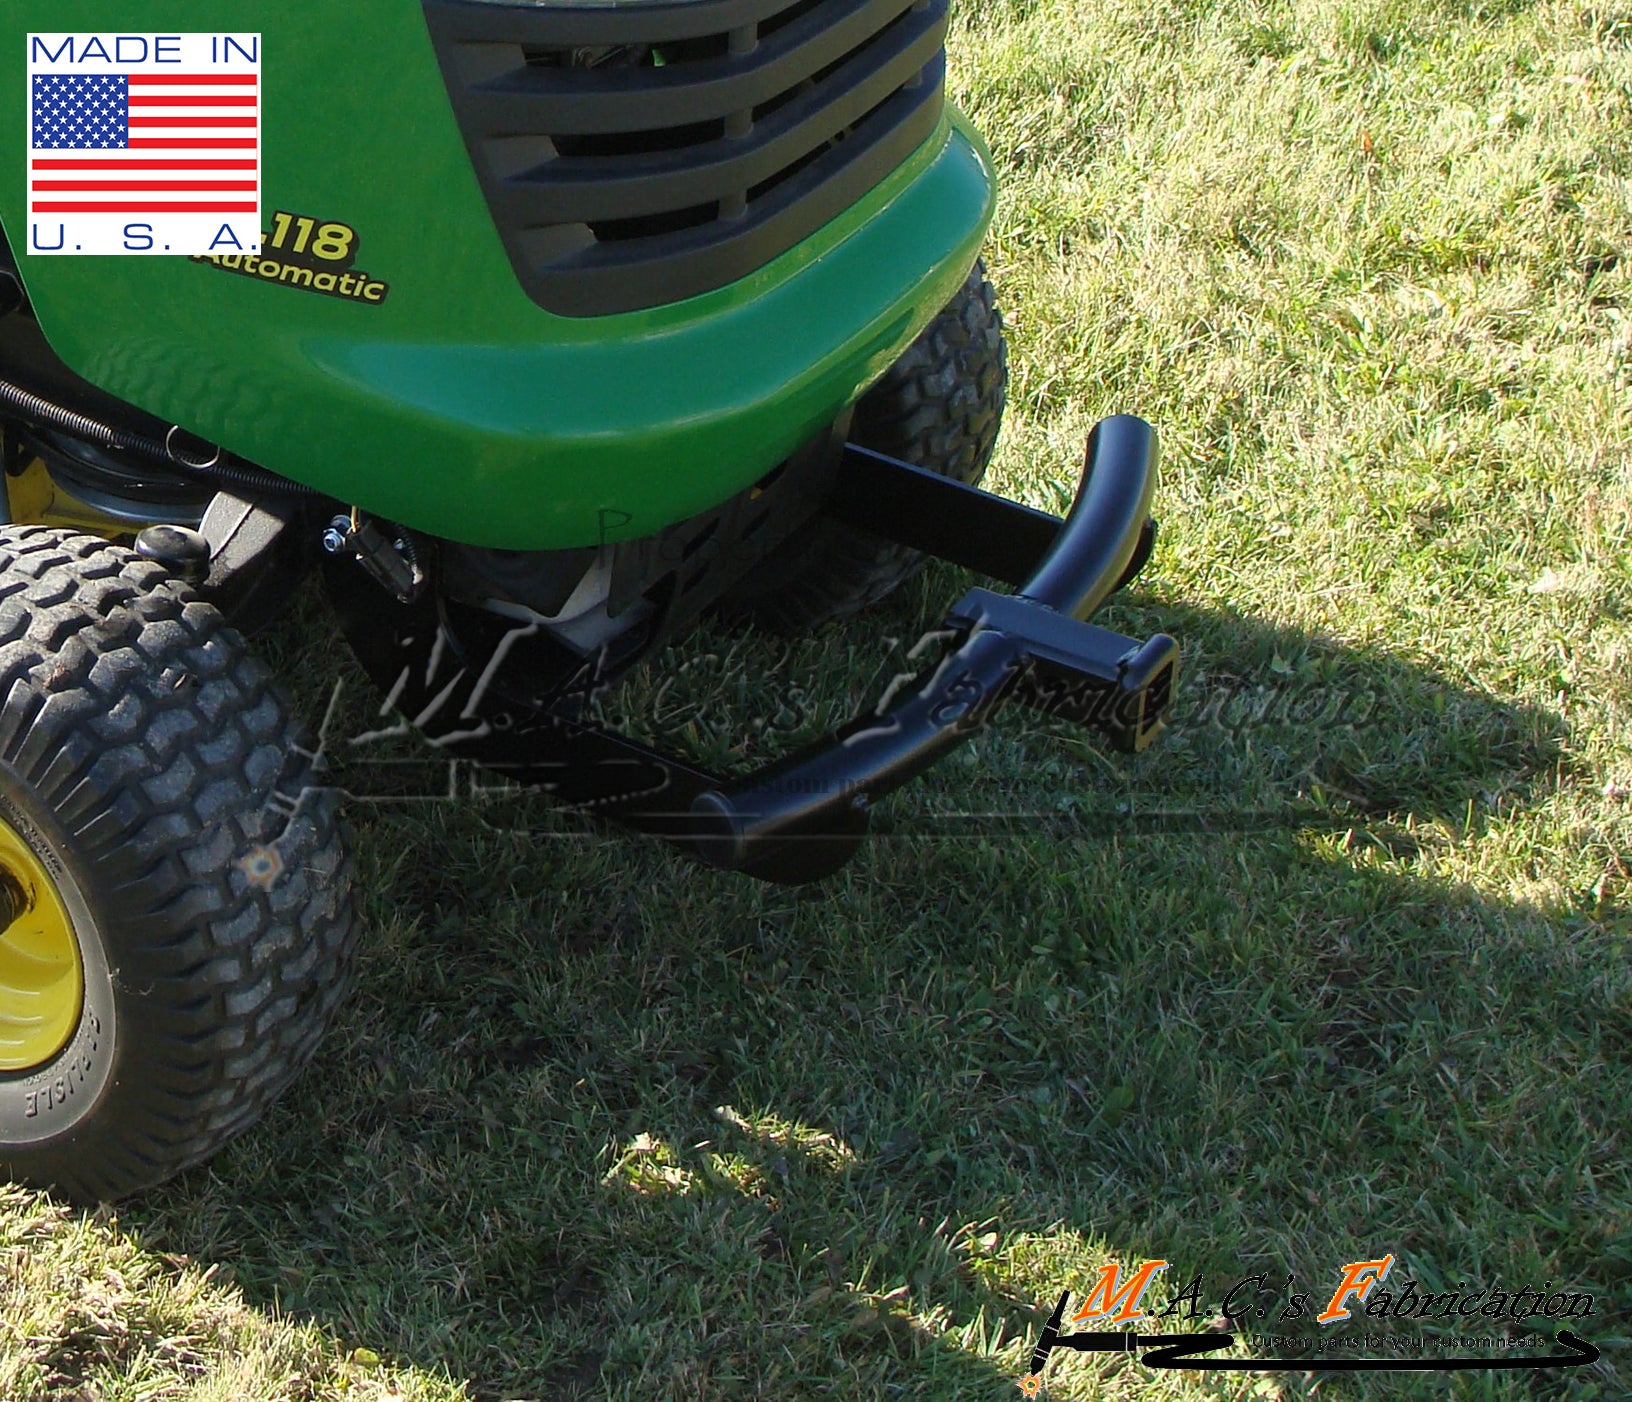 *NEW* John Deere Front "Hitch" Bumper Lawn Tractor LA125 LA130 LA135 LA140 LA145